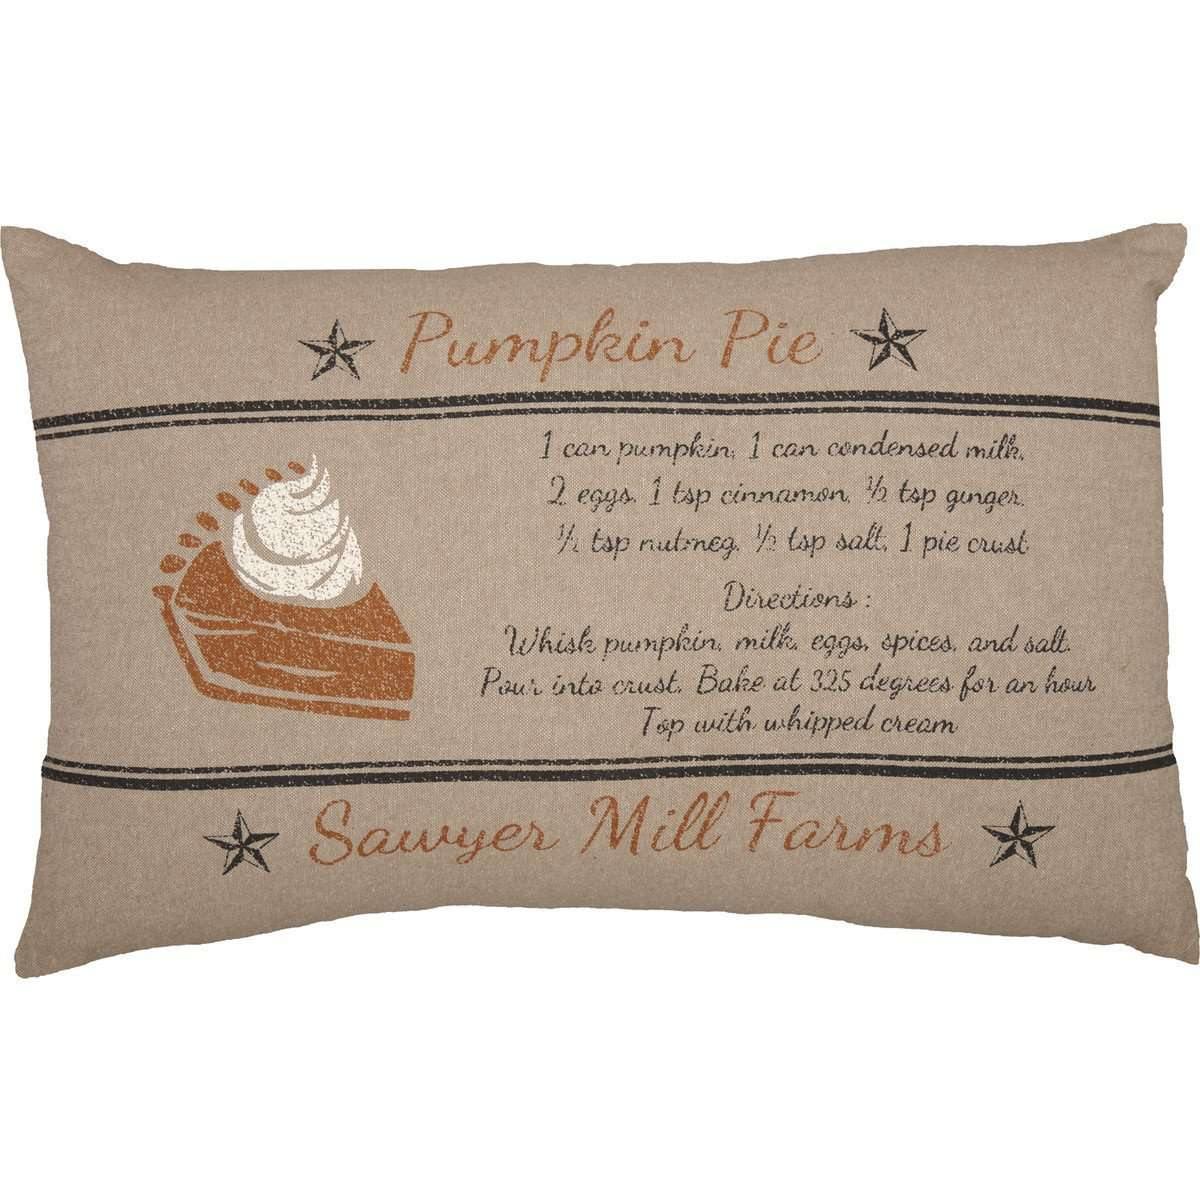 Sawyer Mill Charcoal Pumpkin Pie Recipe Pillow 14x22 VHC Brands front